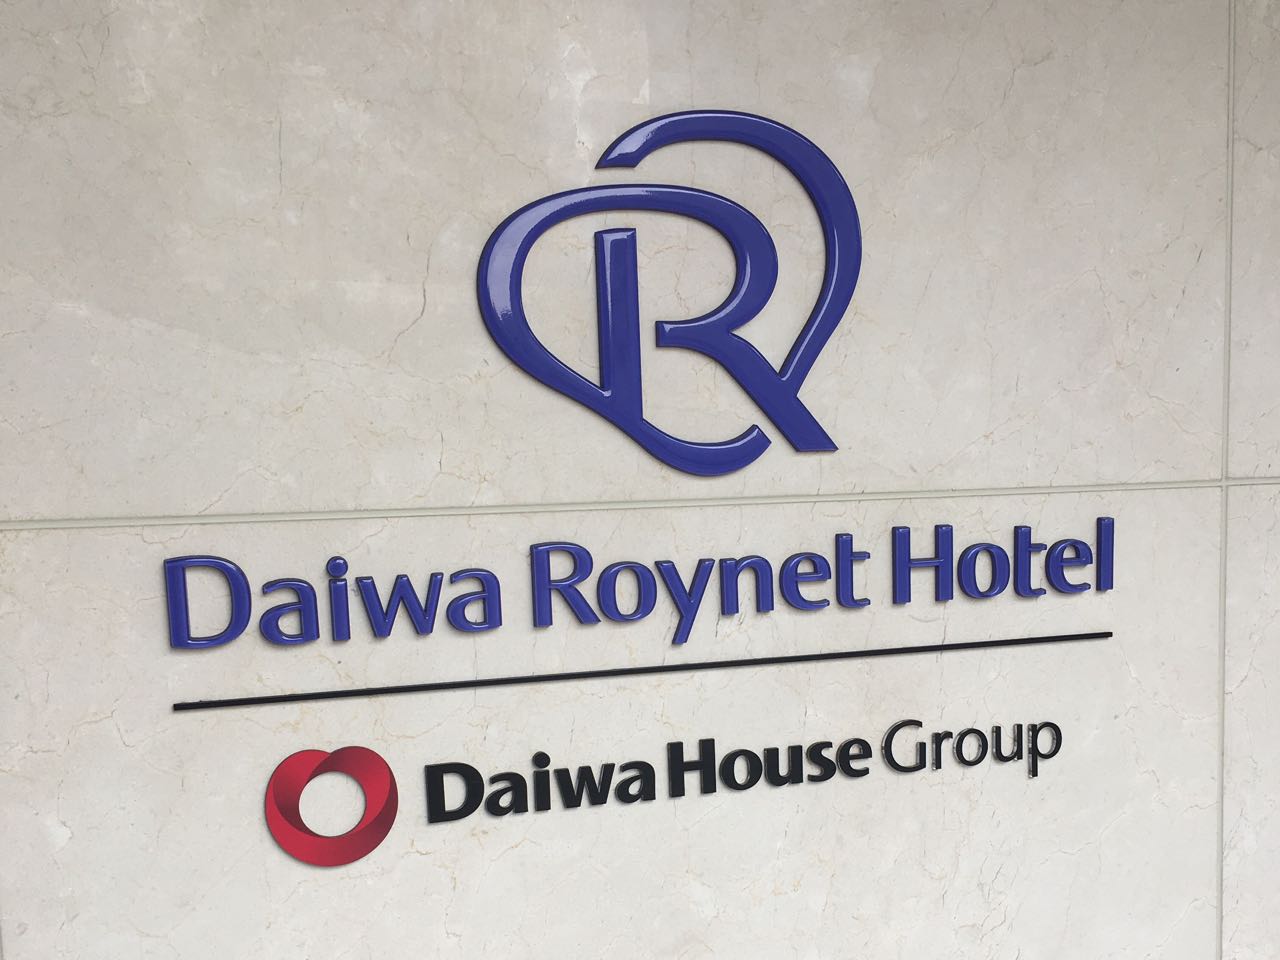 ダイワロイネットホテル_daiwa roynet hotel